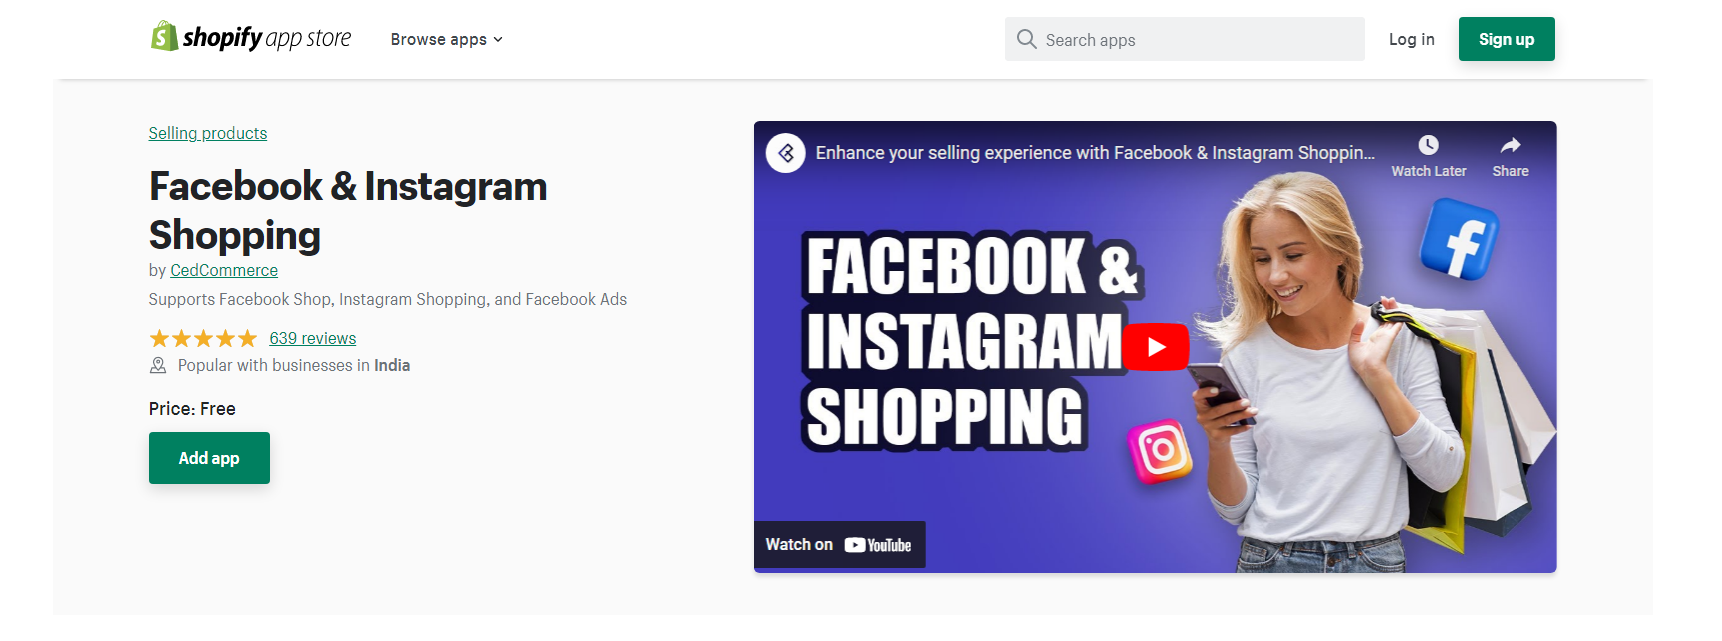 Facebook & Instagram Shopping - Facebook Shopify app